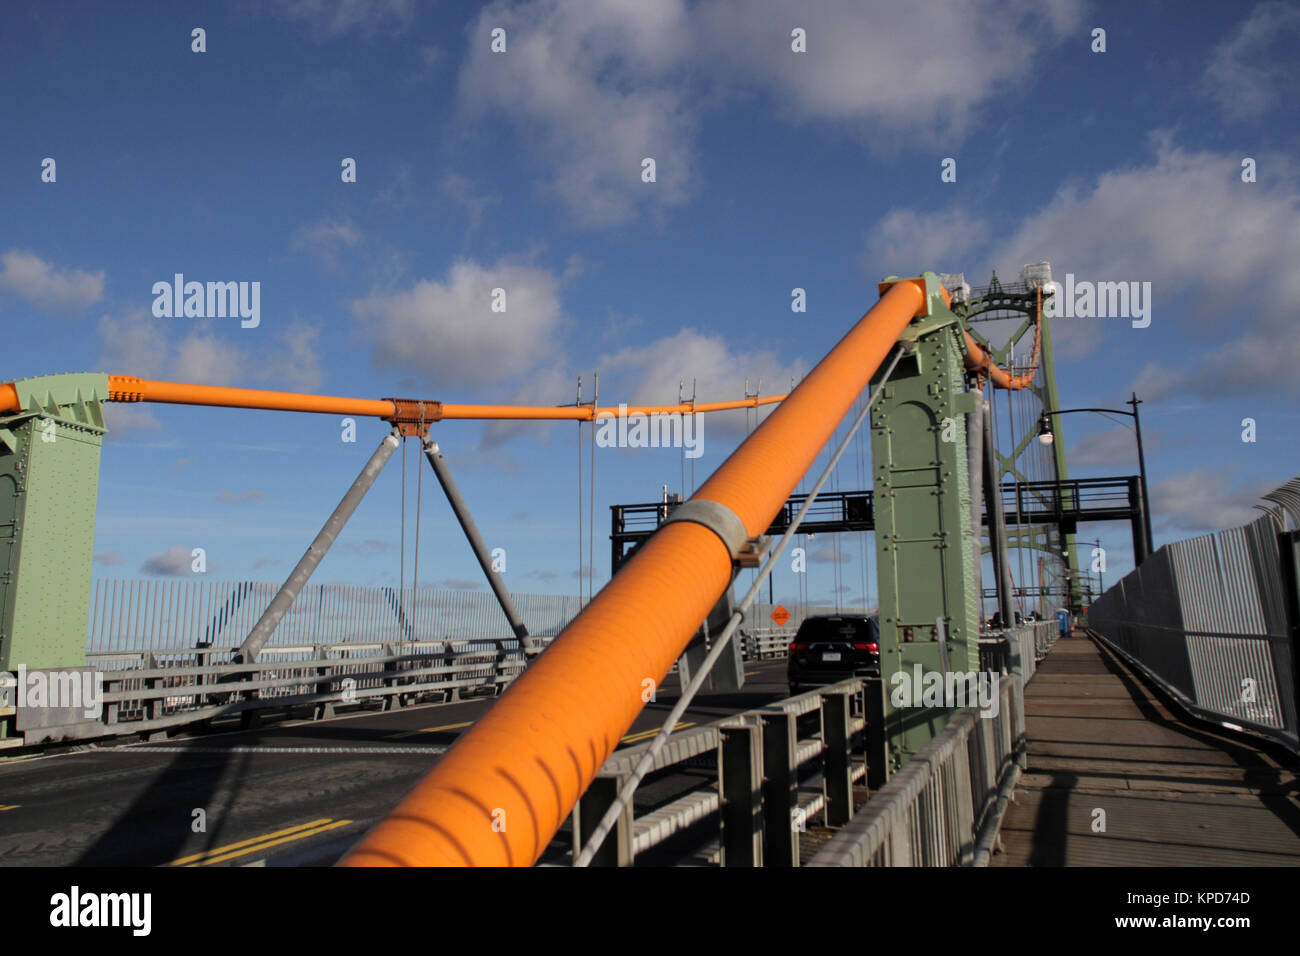 Il Macdonald ponte in Halifax, N.S., nov. 4, 2017. La stampa canadese immagini/Lee Brown Foto Stock